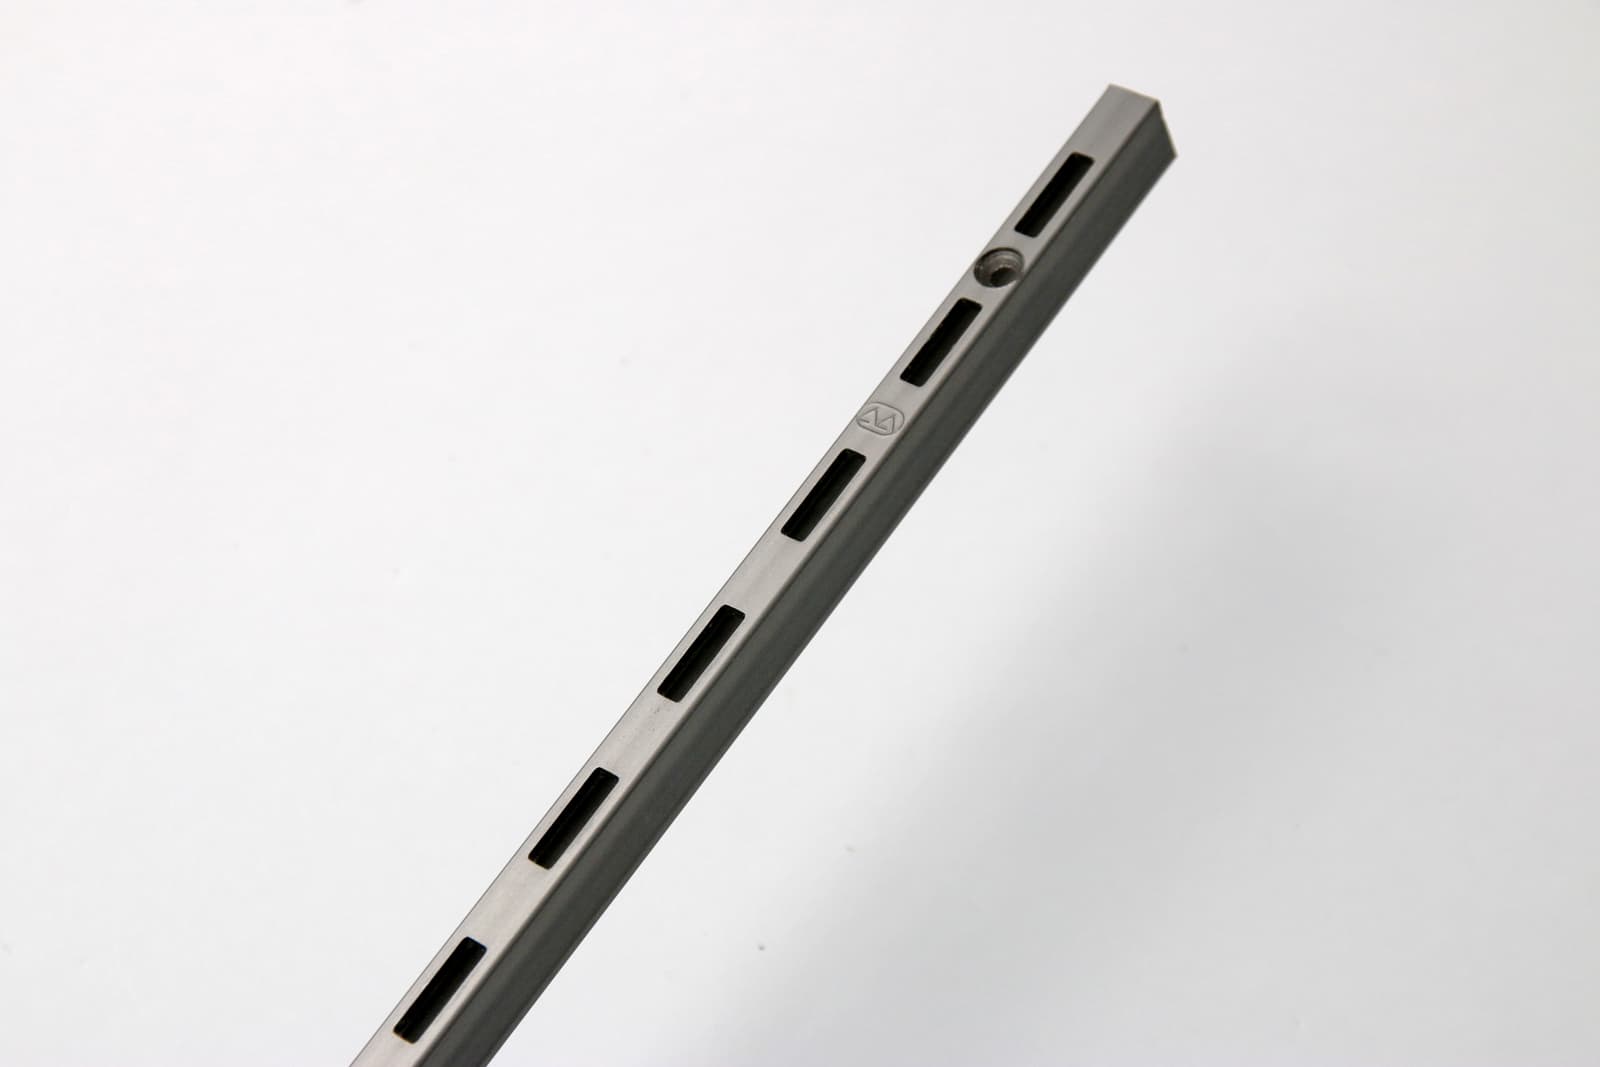 ウォールディスプレイパーツ レール シングル L1820 PS-BK007-05-G207 マットで渋い表情を持つ「サンセン材」と呼ばれる鉄材